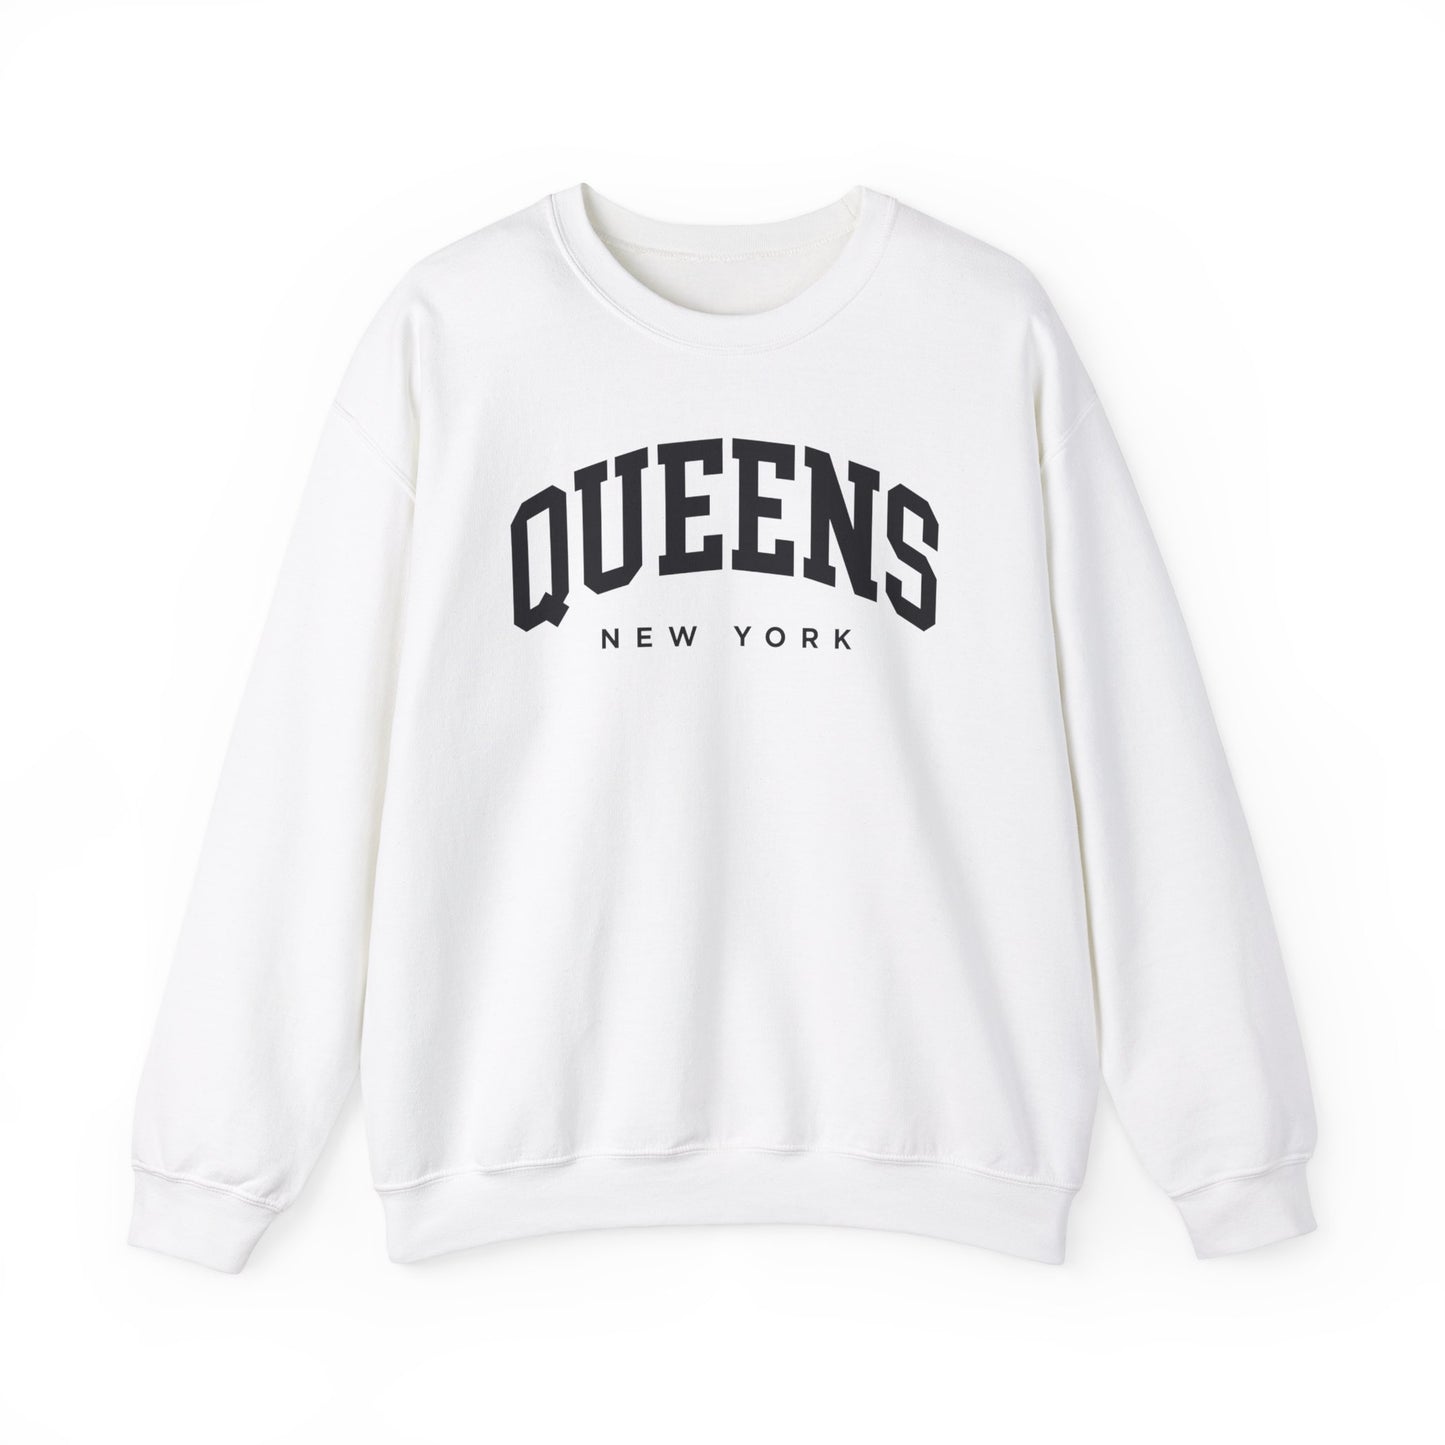 Queens New York Sweatshirt